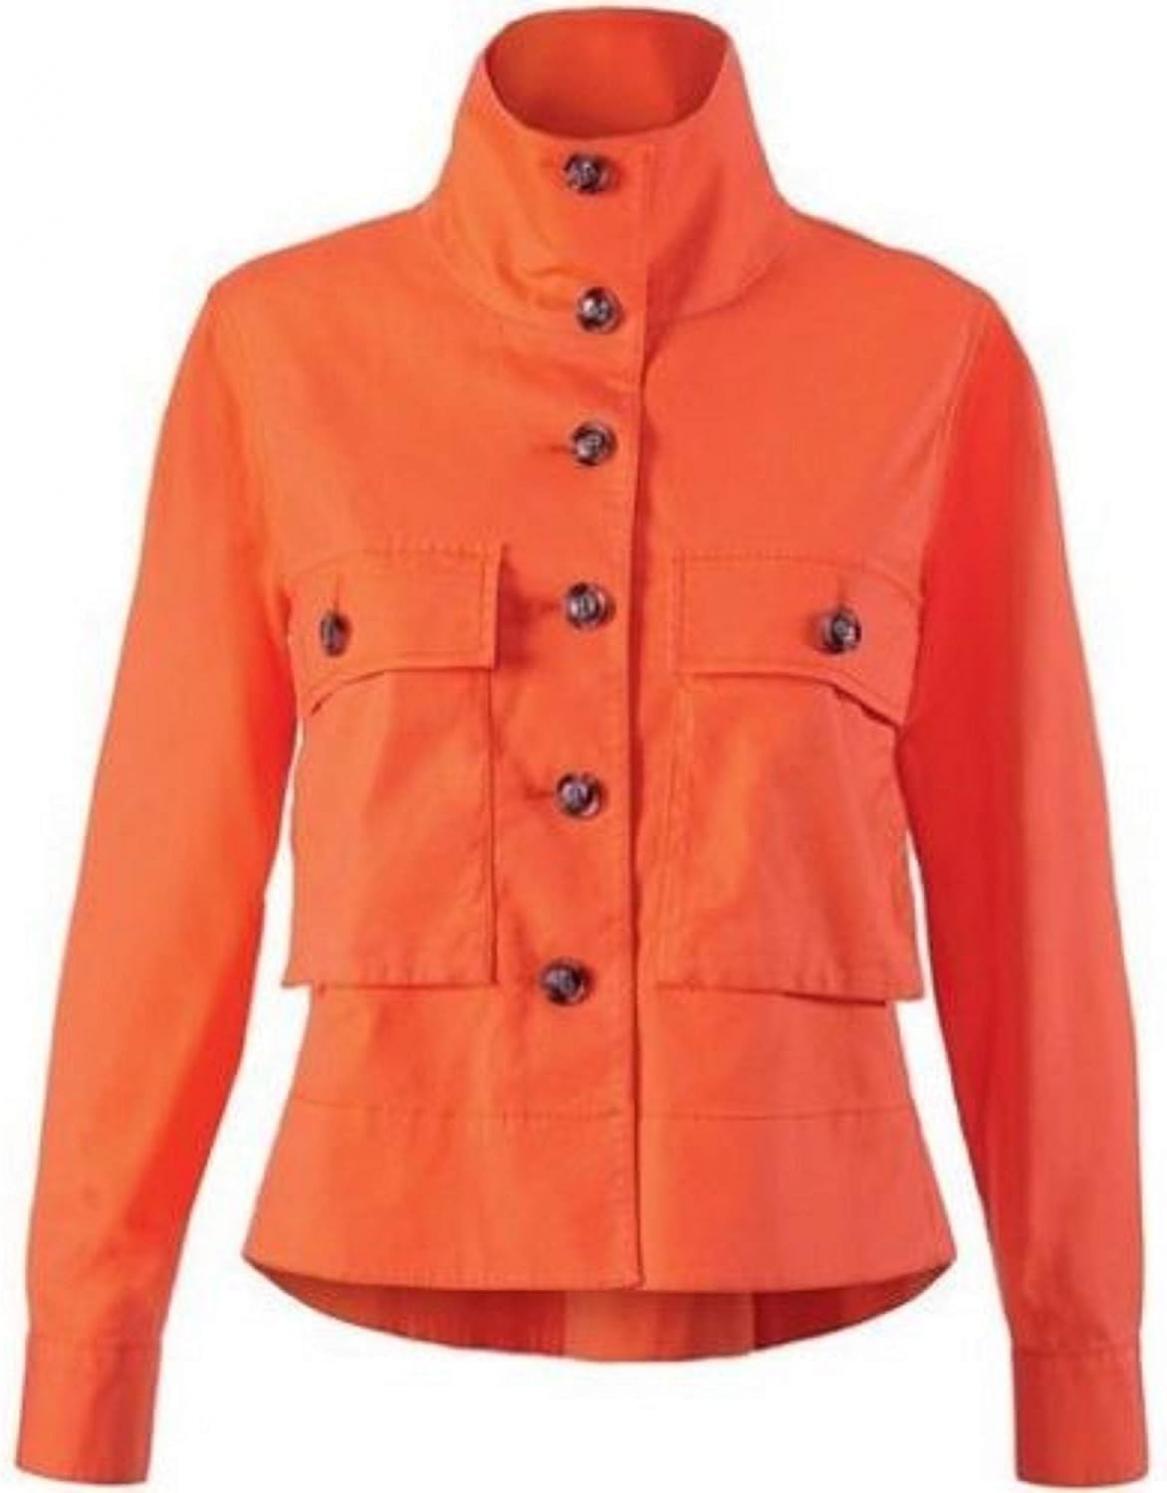 cabi orange jacket CABI LILY JACKET 5098